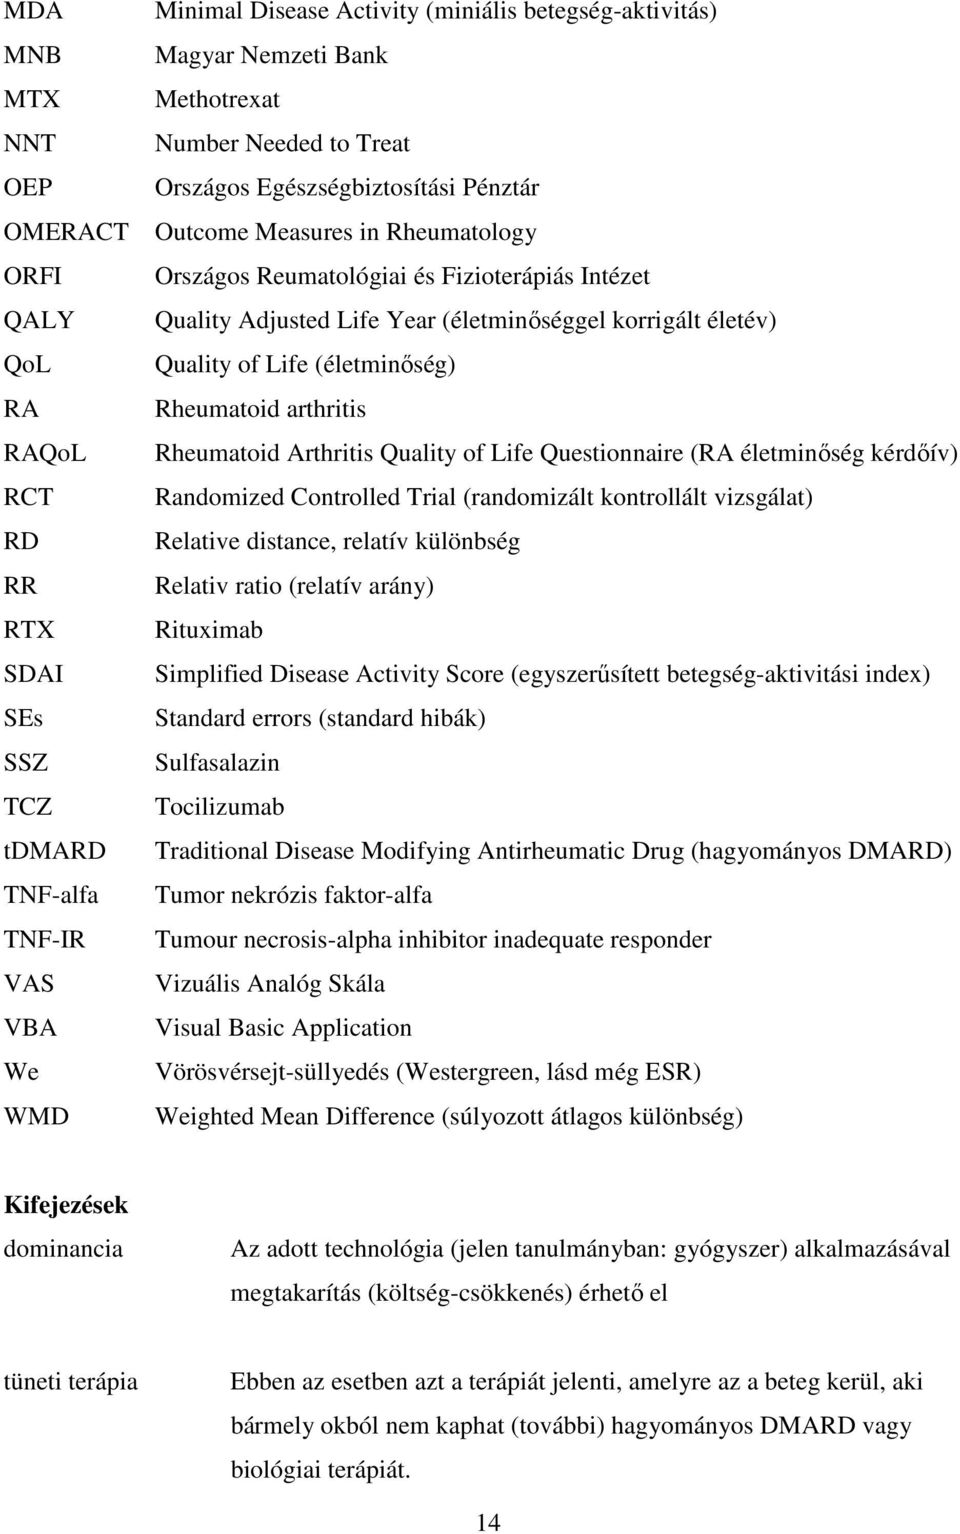 korrigált életév) Quality of Life (életminőség) Rheumatoid arthritis Rheumatoid Arthritis Quality of Life Questionnaire (RA életminőség kérdőív) Randomized Controlled Trial (randomizált kontrollált